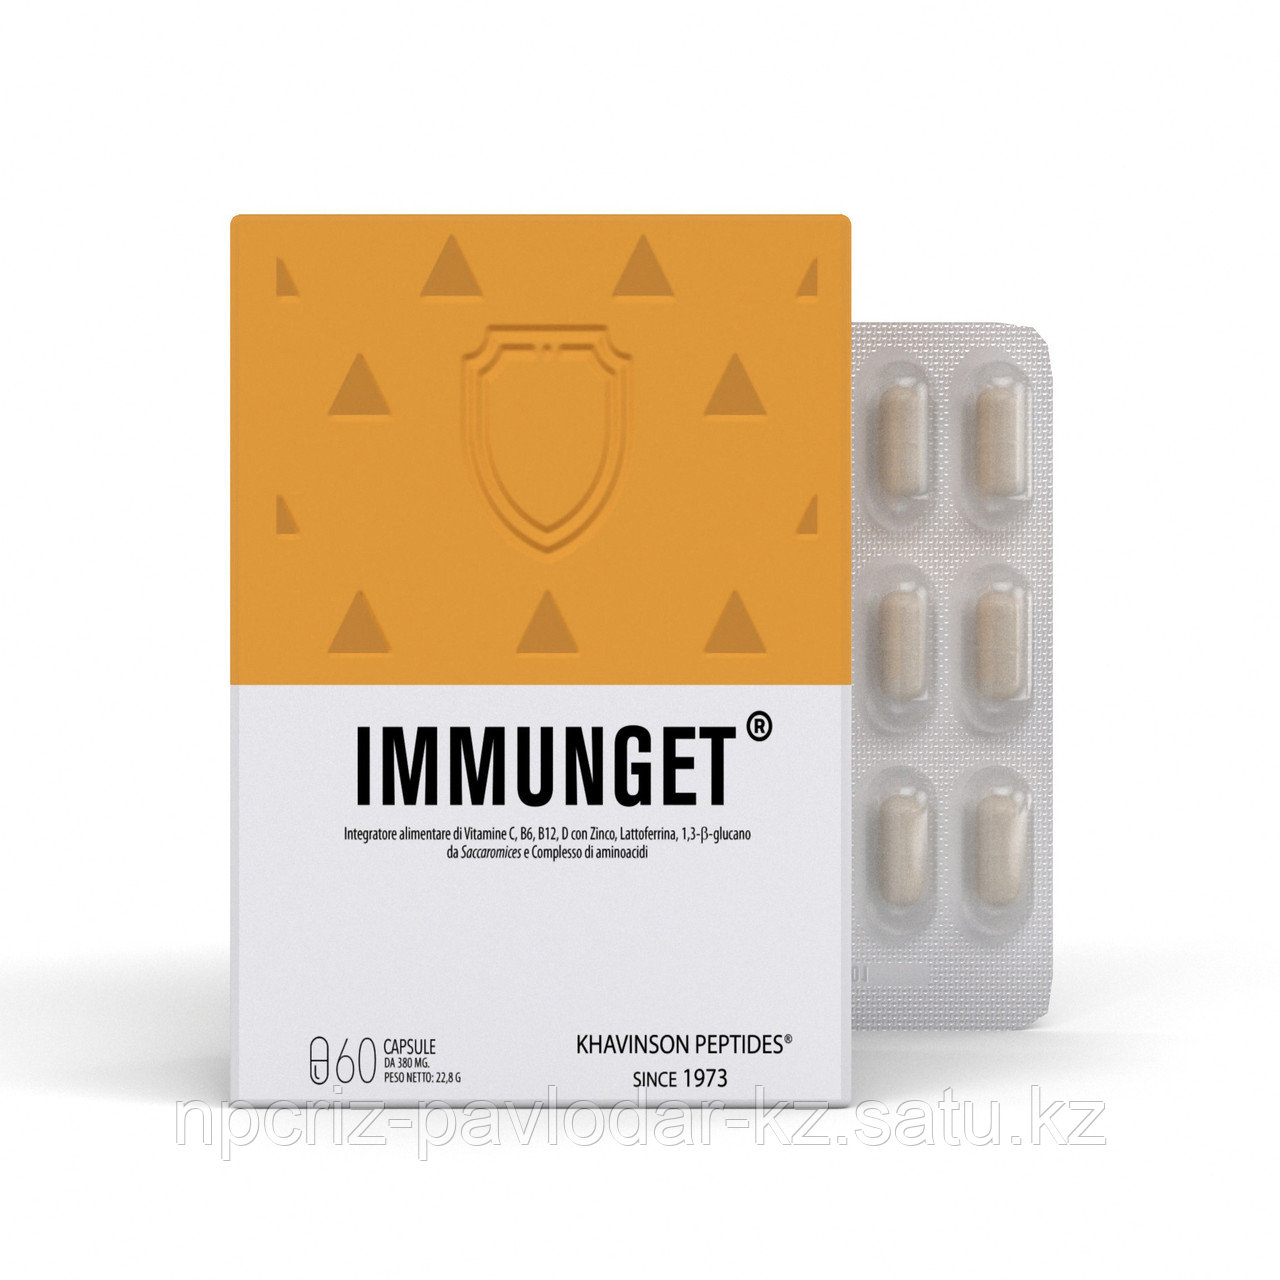 IMMUNGET® иммунгет - пептидный комплекс для  иммунной системы. Khavinson Peptides